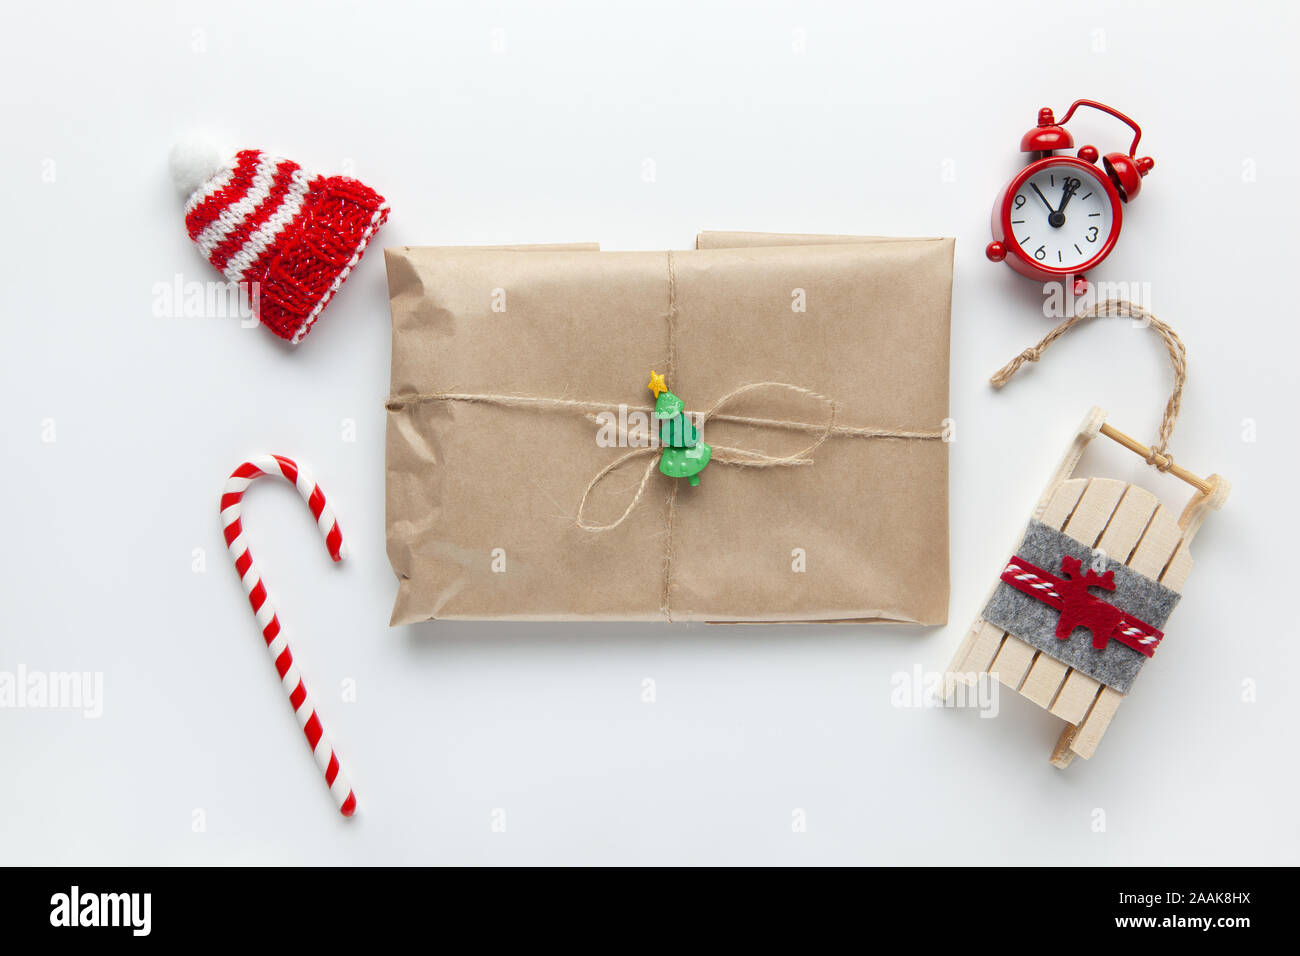 Weihnachten Geschenk verpackt in braun Handwerk Papier, mit der geissel  gebunden, mit Zuckerrohr Süßigkeiten, kleine analoge Uhr, Schlitten, Hut  auf weißem Hintergrund. Minimalistischer Stil. Top Stockfotografie - Alamy